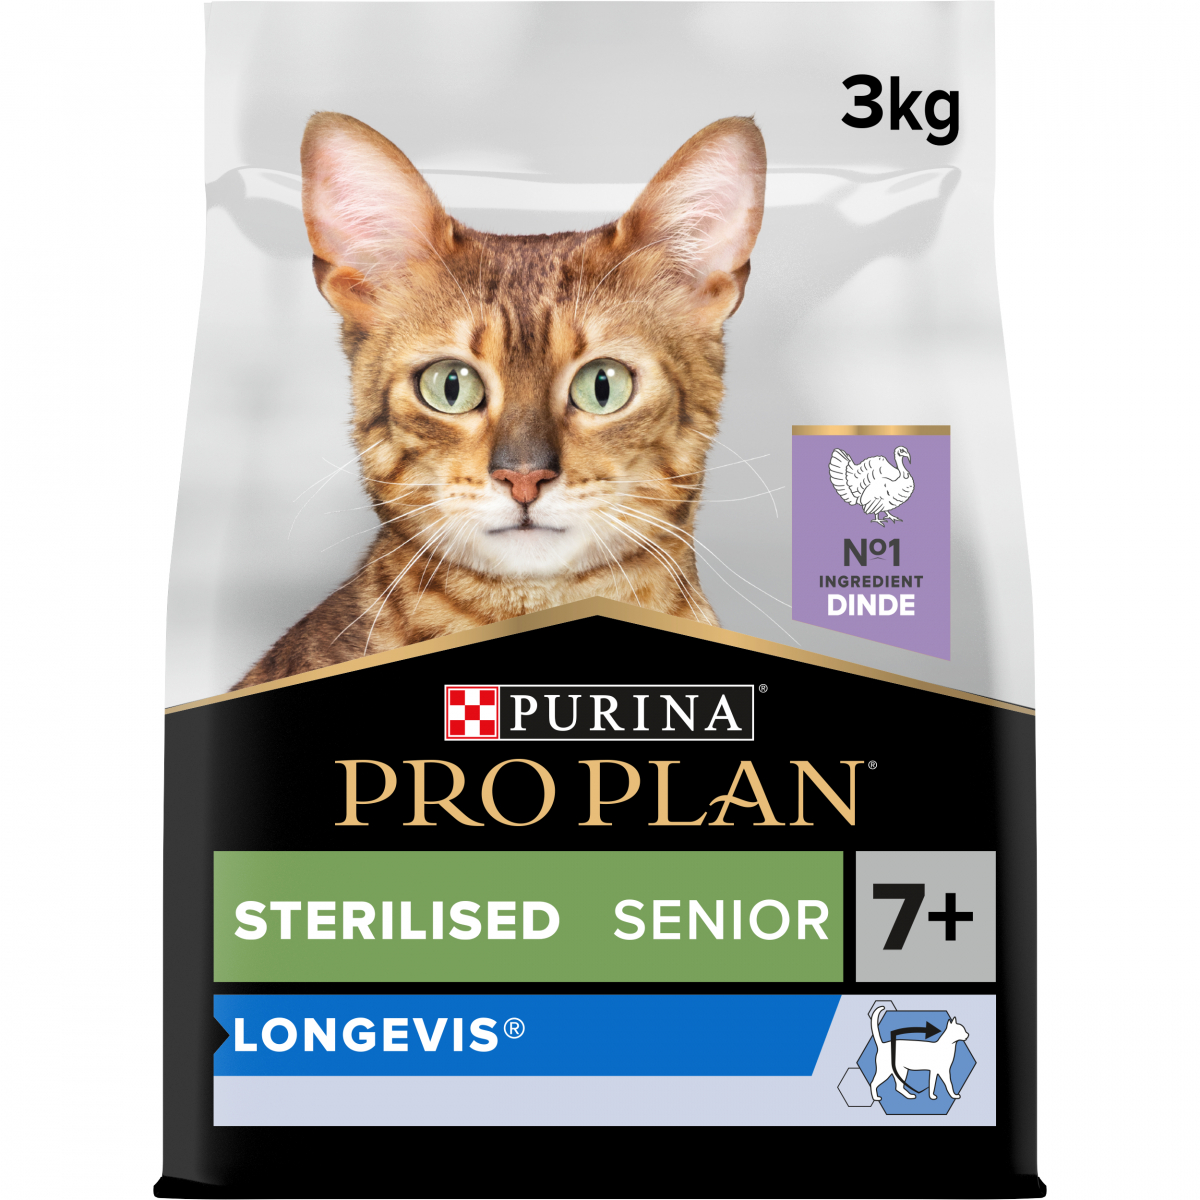 Pro Plan Sterilised Senior 7+ Longevis Pavo para gatos